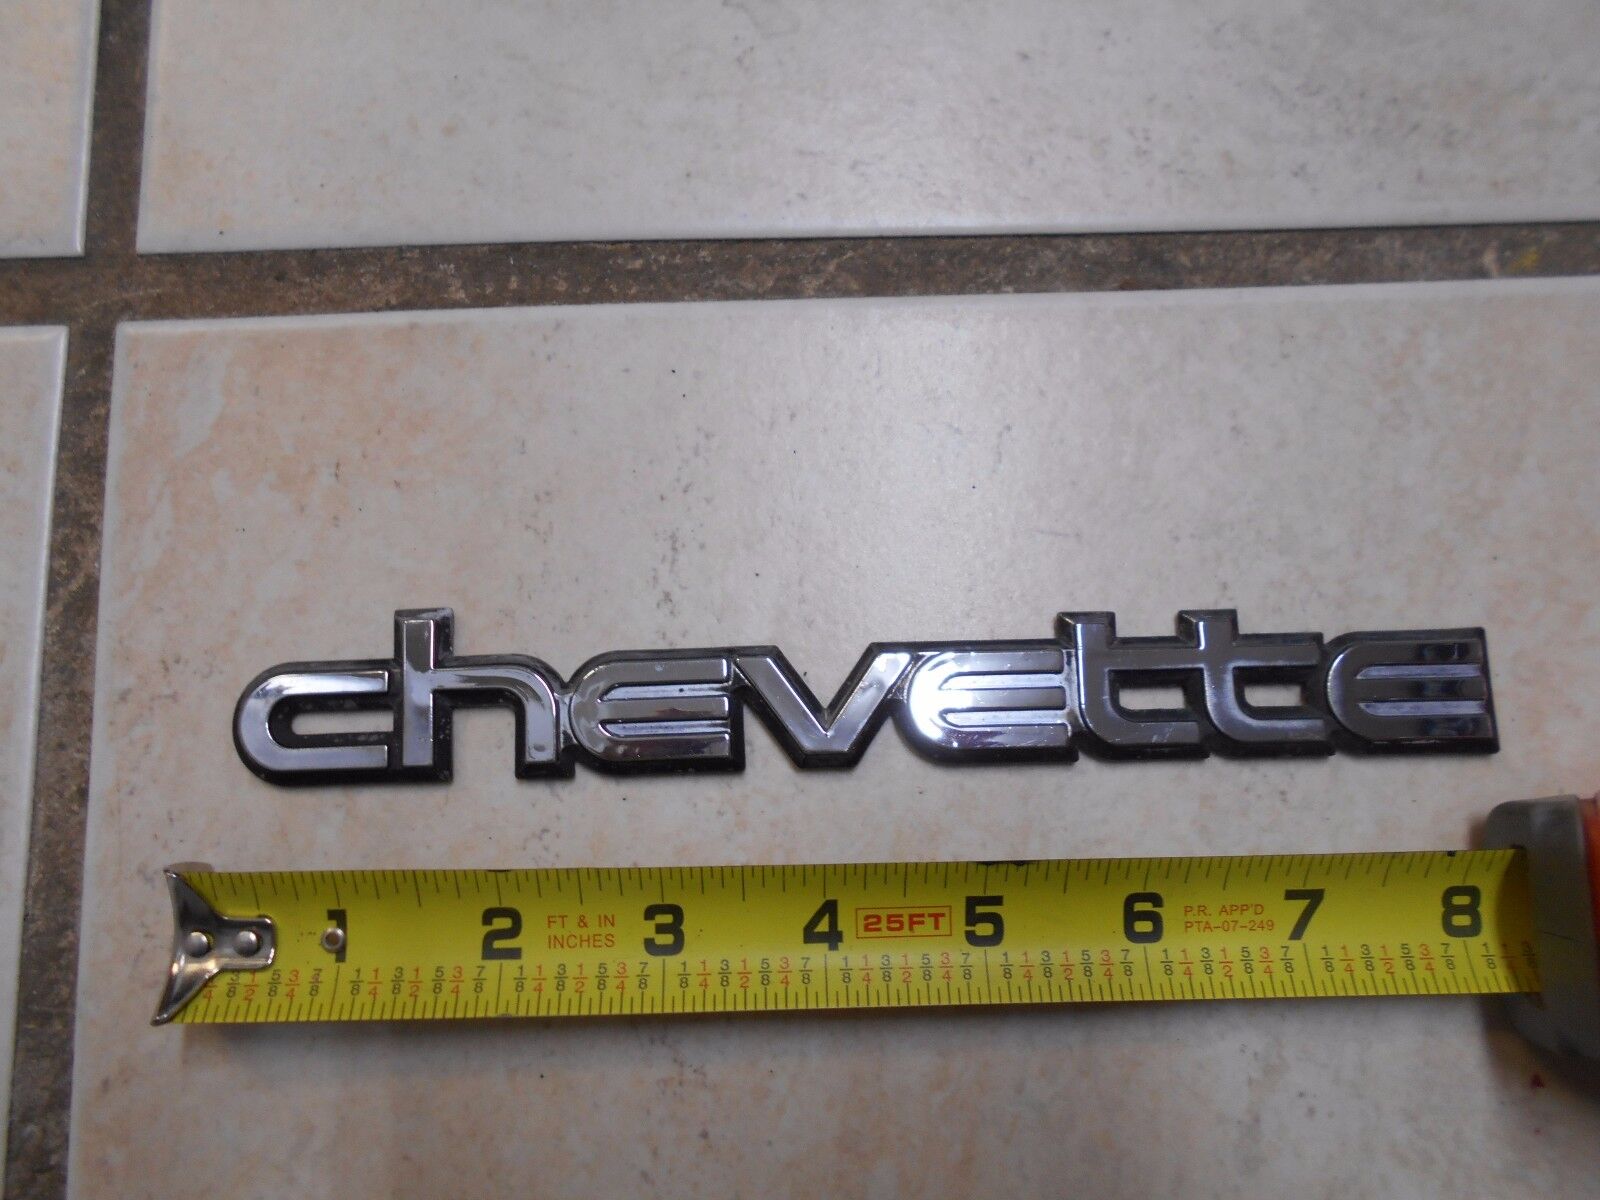 Chevrolet CHEVETTE  Script Emblem 